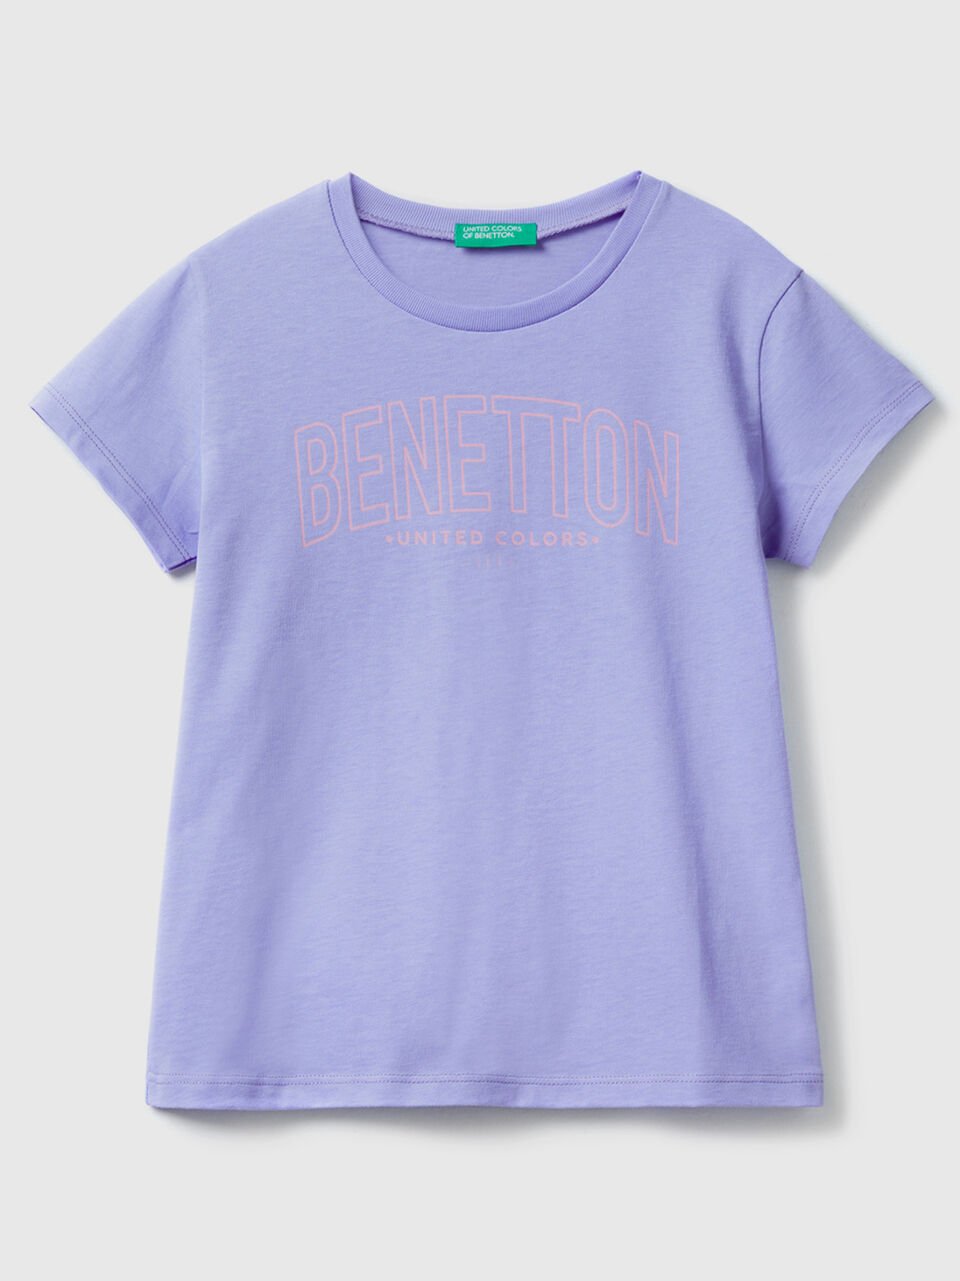 A Prezzi Outlet Maglietta con logo 100% cotone benetton online